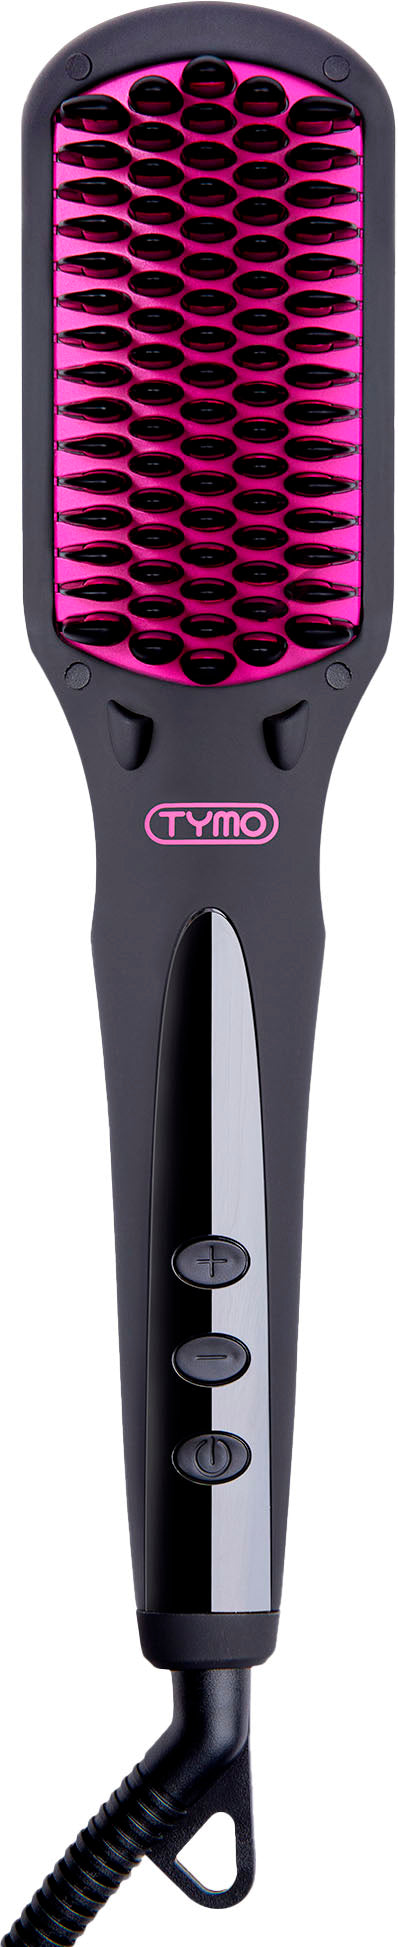 TYMO Ionic Hair Straightening Brush - Black_4